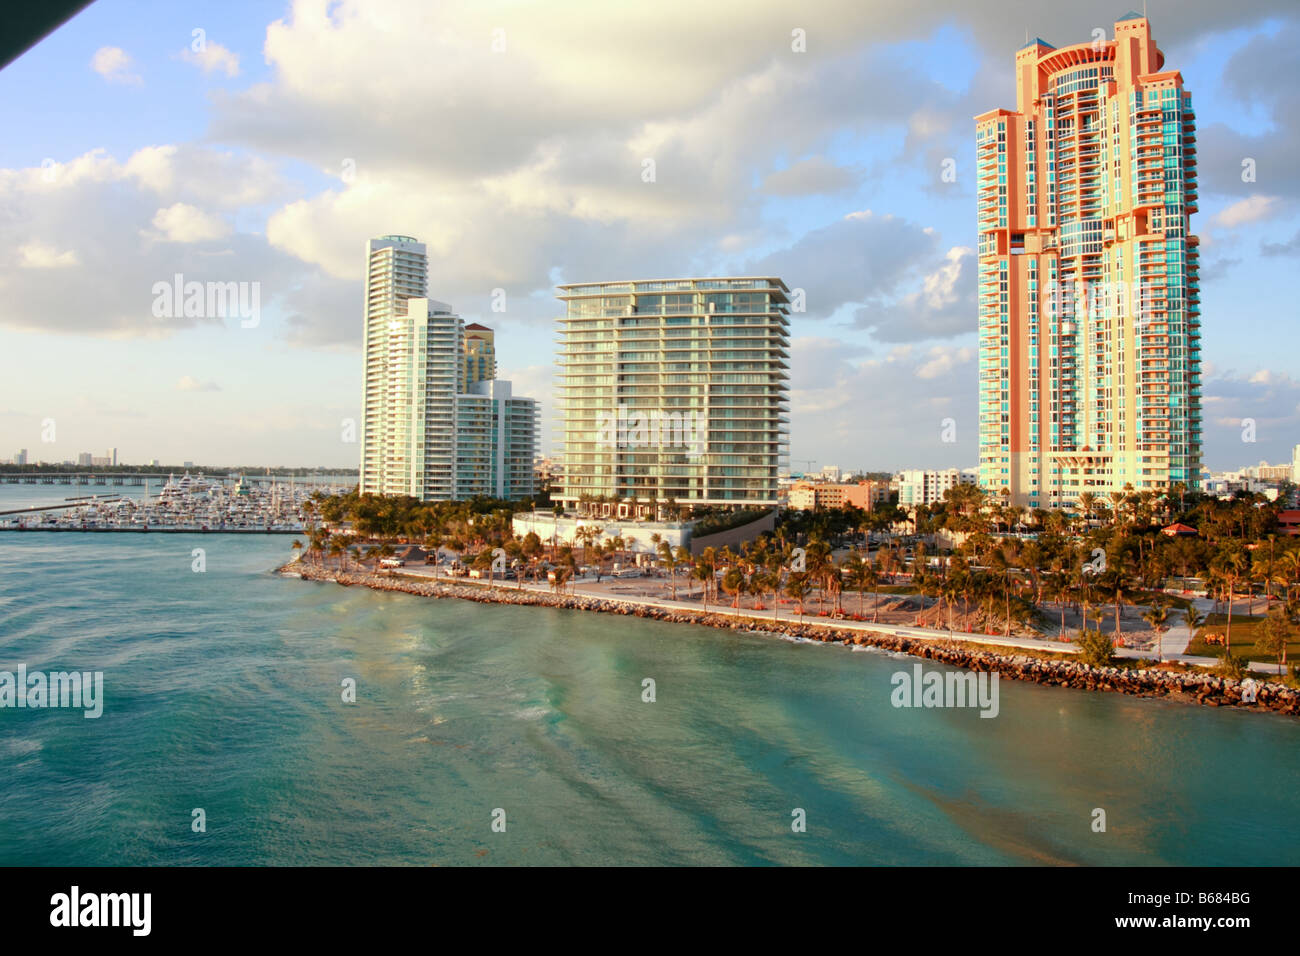 Mehrere Wohnungen in Miami Beach. Gezeigt werden Portofino Turm, der Murano in Portofino und Apogee South Beach. Stockfoto